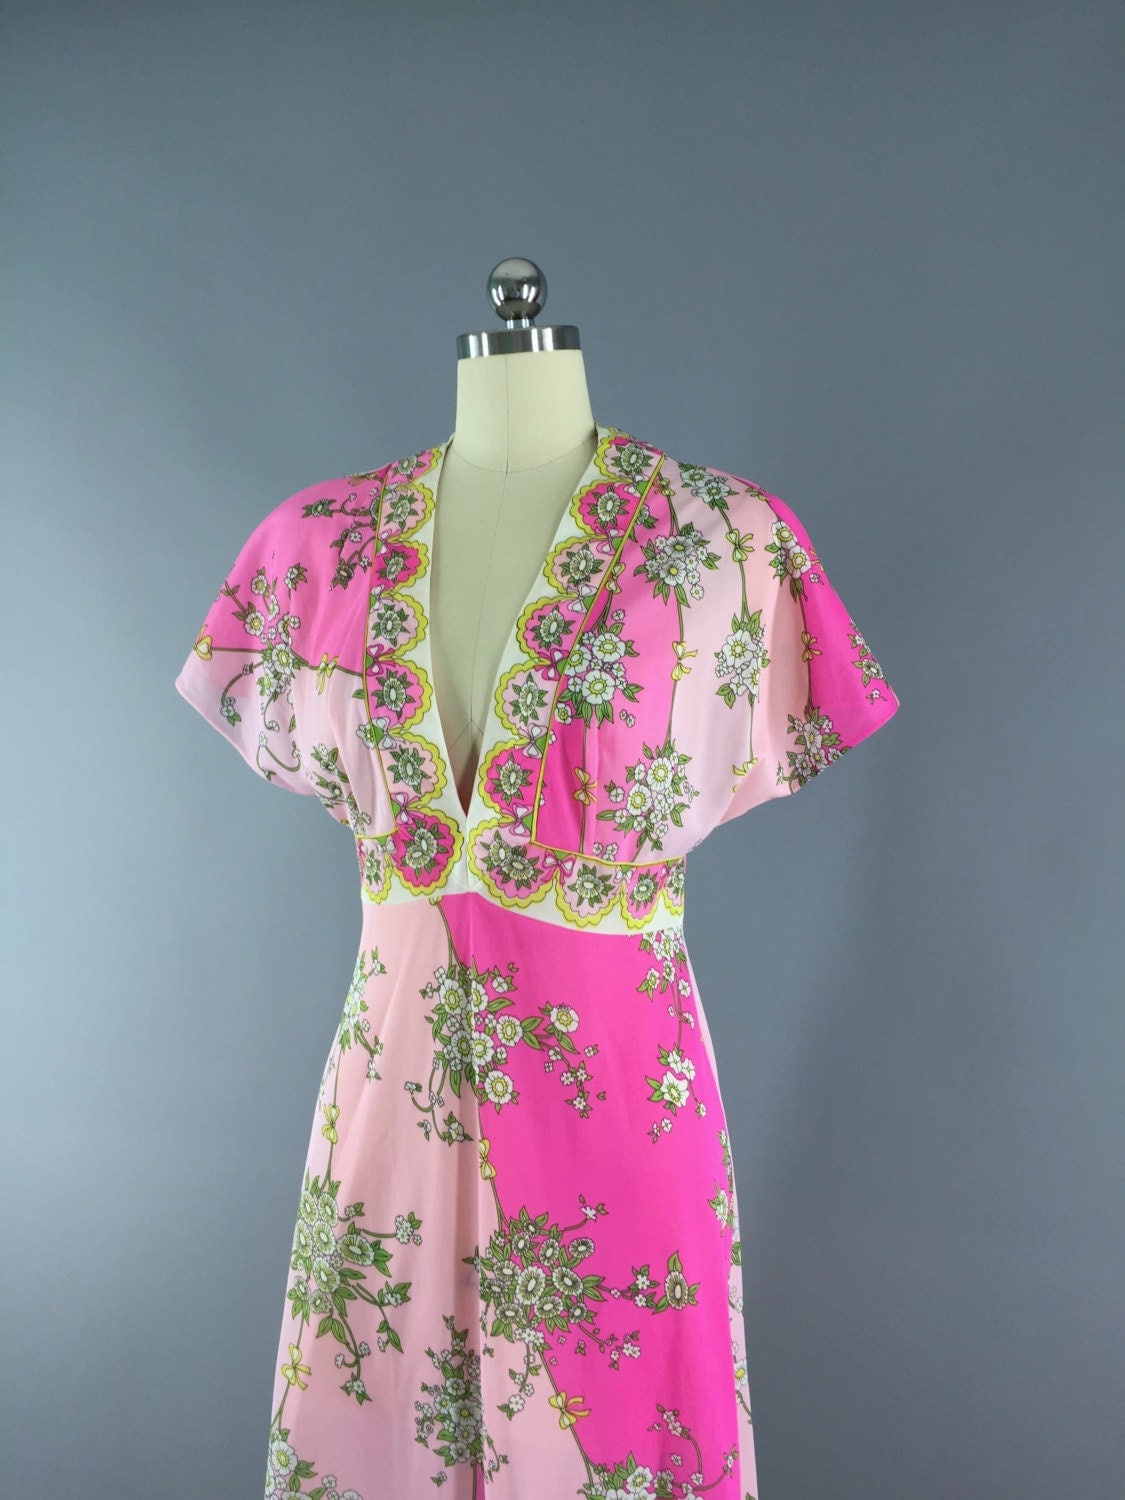 Vintage 1960s Emilio Pucci Nightgown Slip Dress / 60s Lingerie